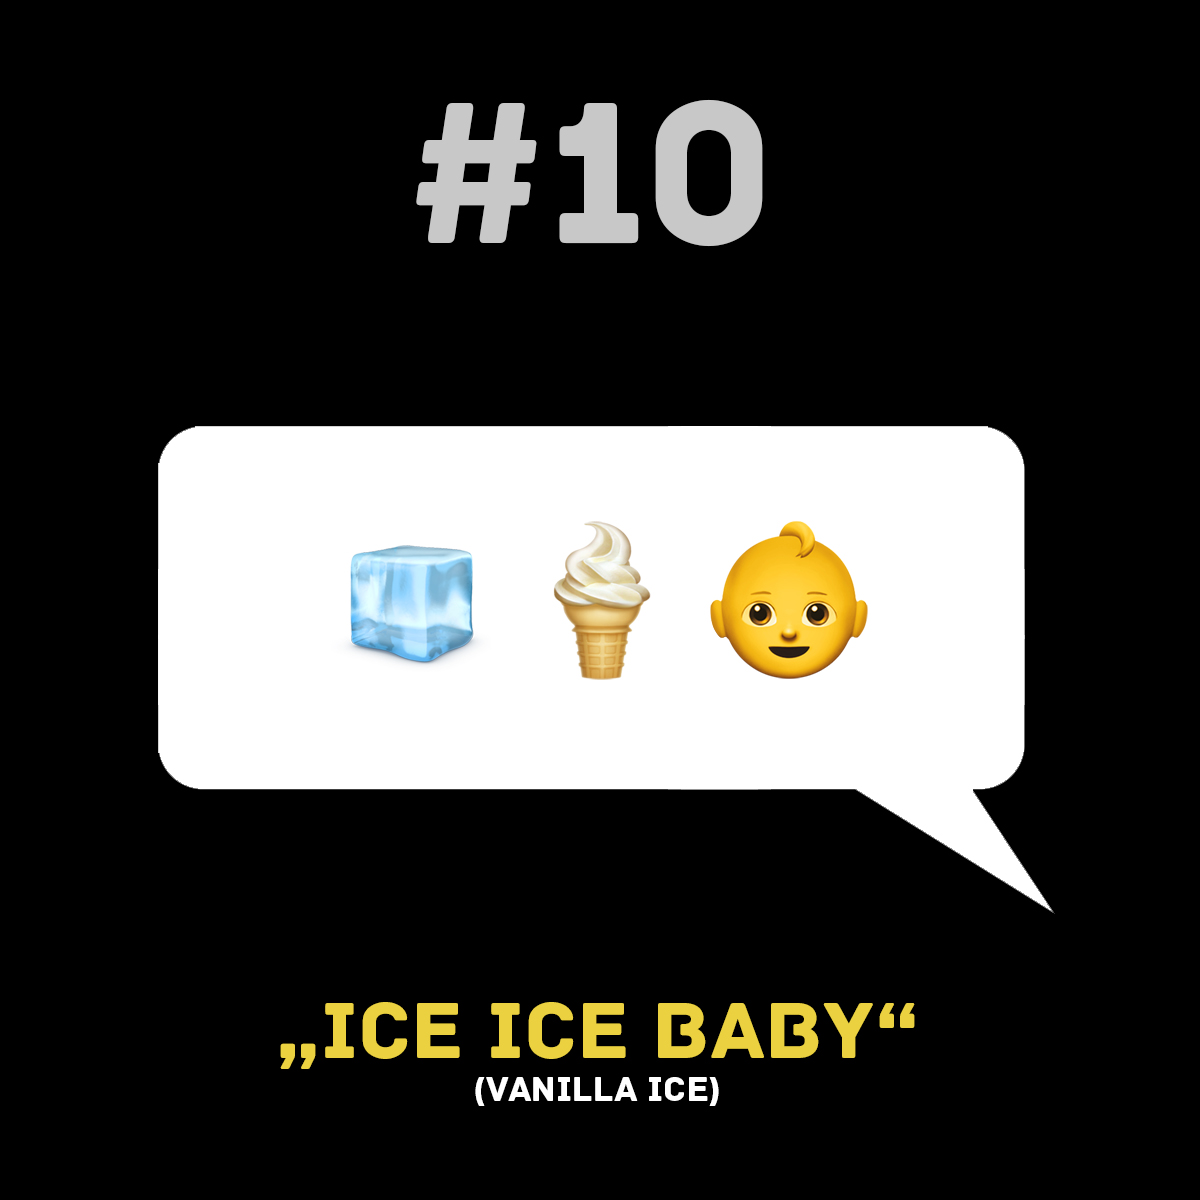 Songtitel in Emojis dargestellt emojibands_10b 